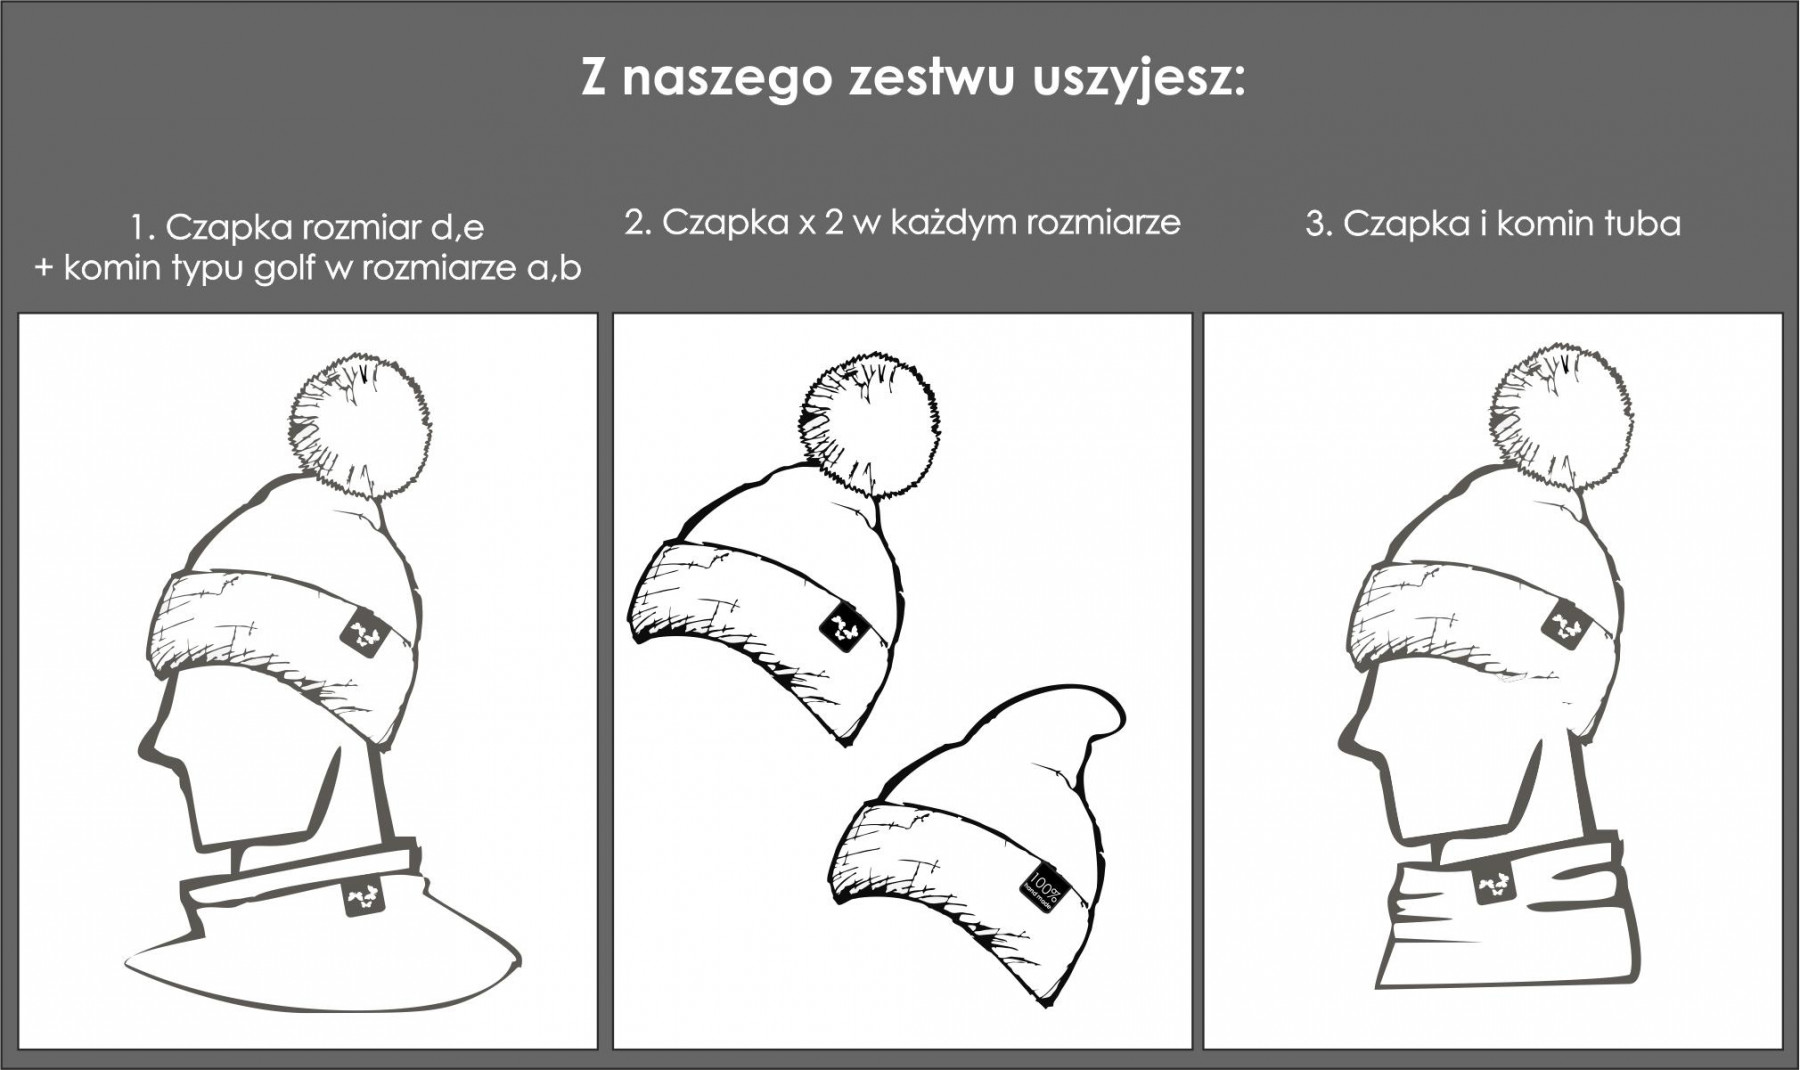 NAVY / lis - Zestaw kreatywny do uszycia czapki i komina